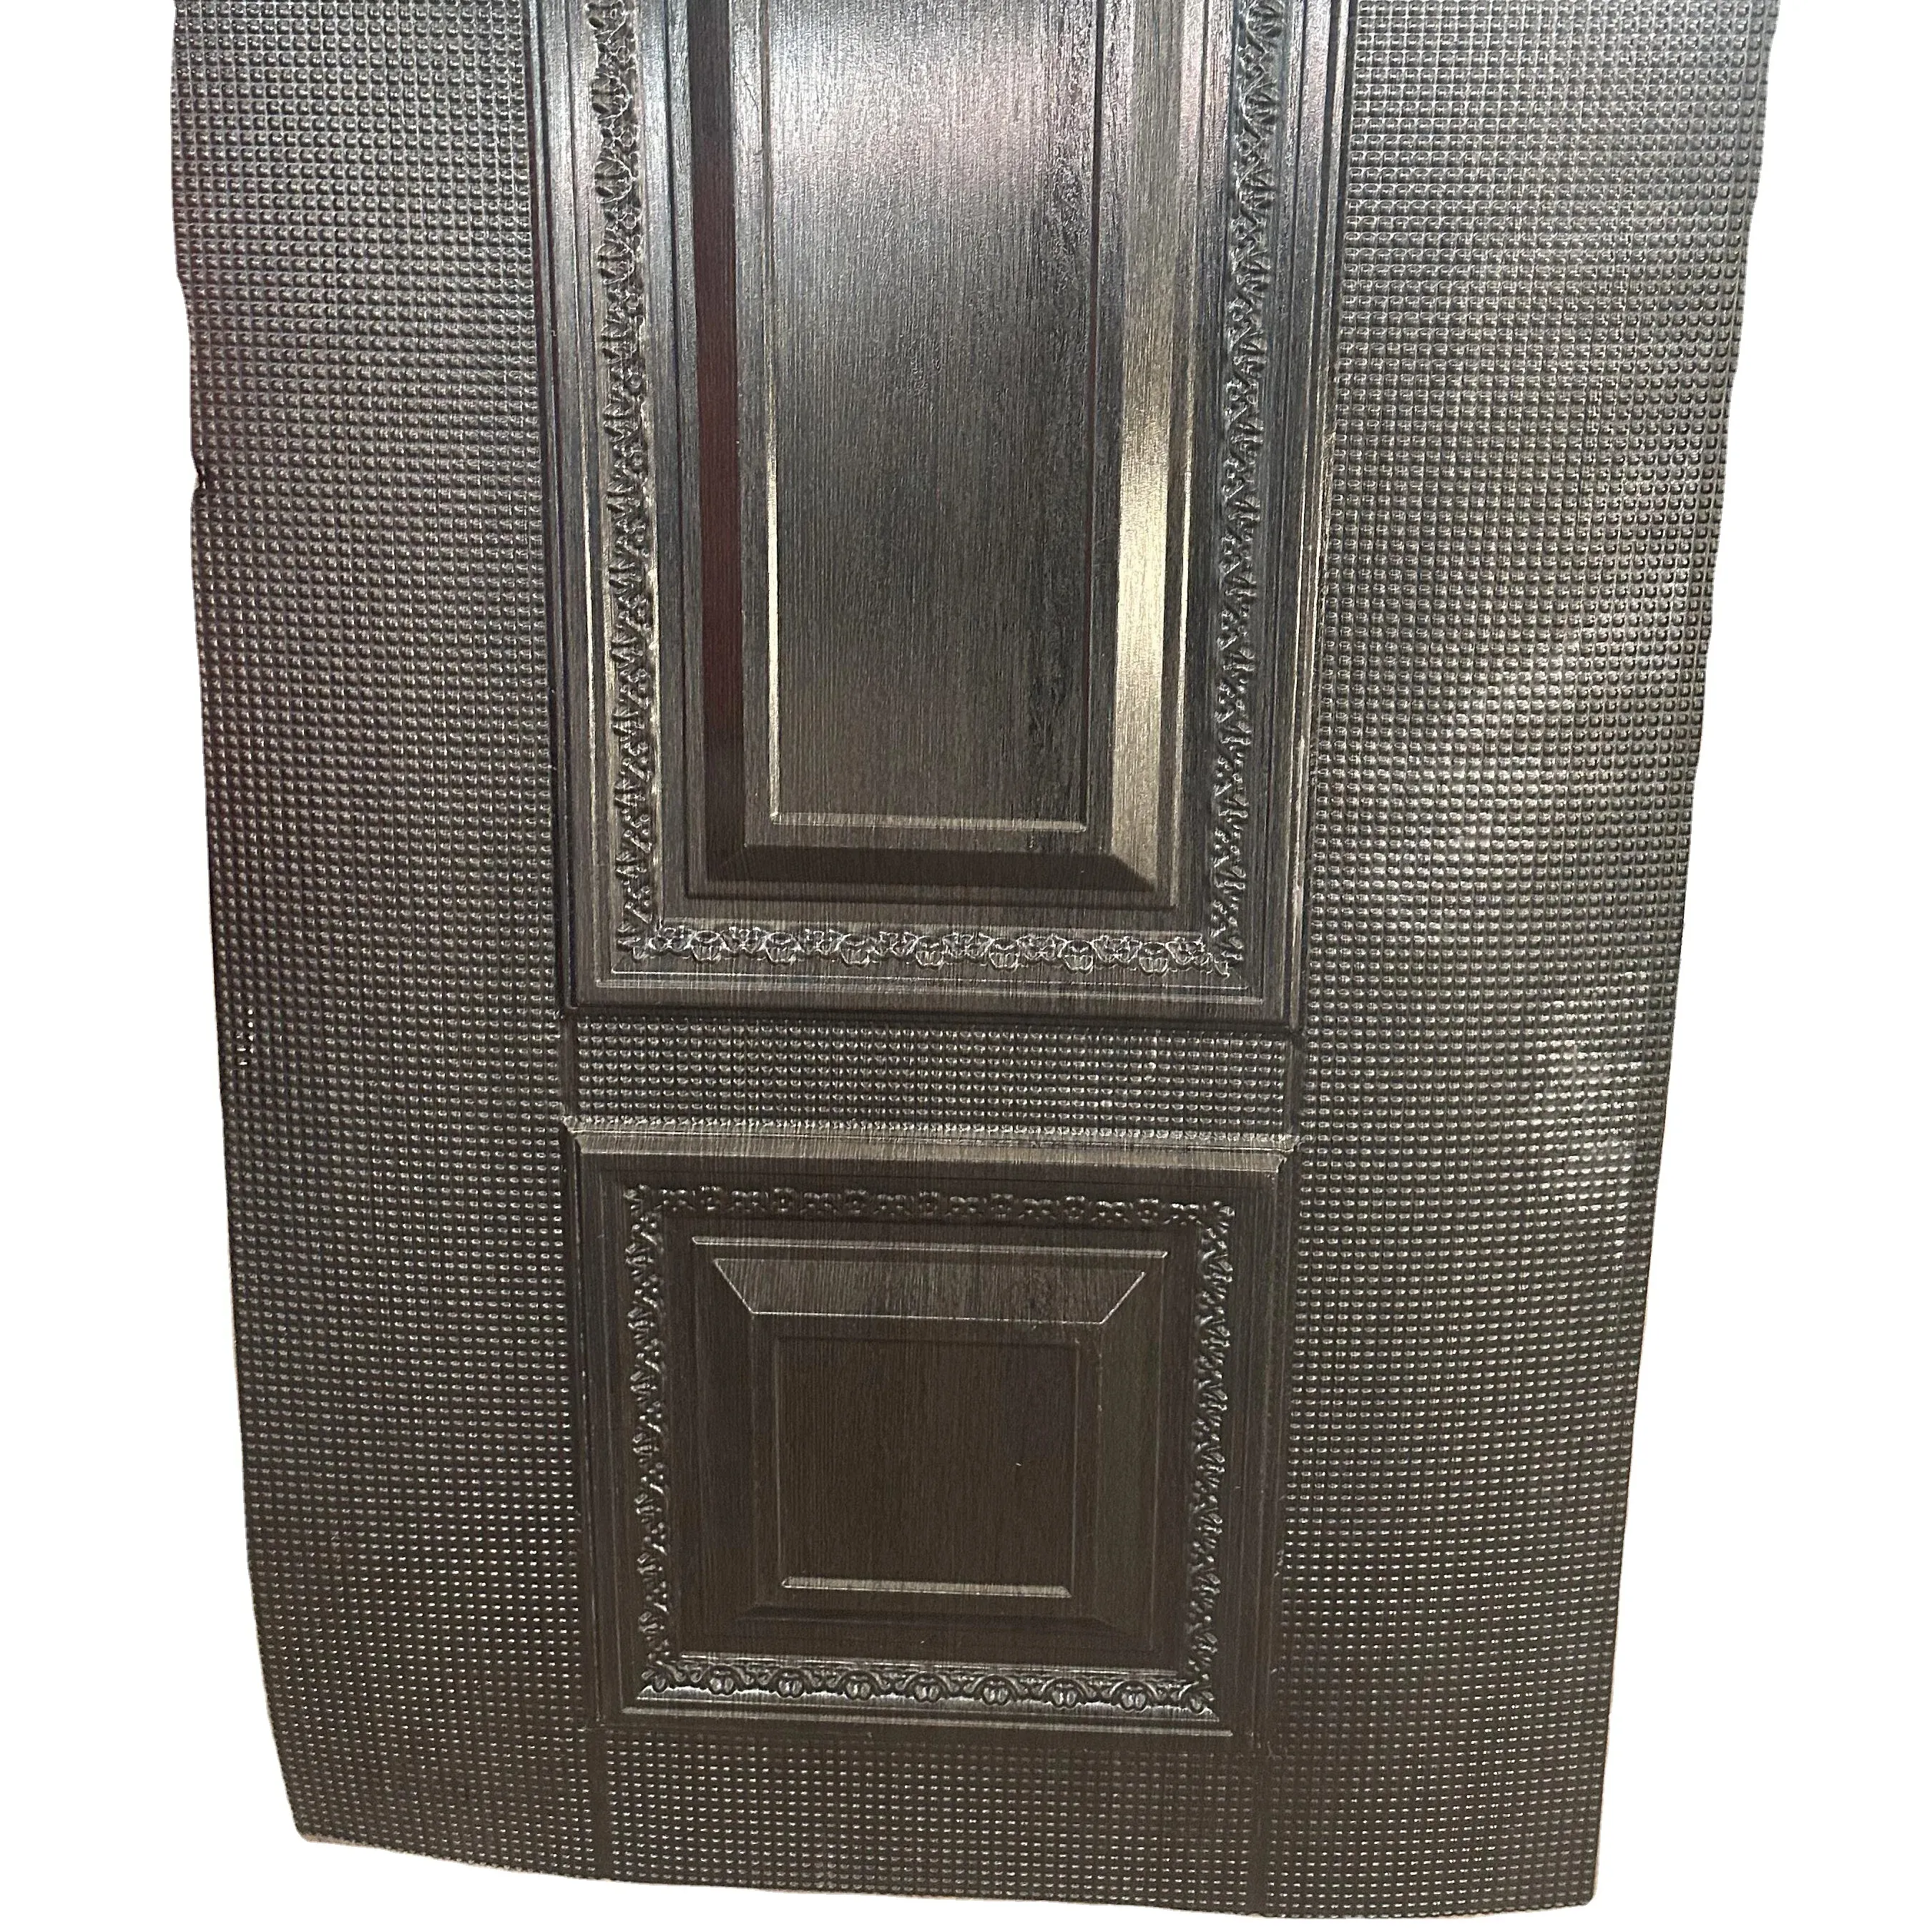 Pvc कोटिंग रंग और उभरा हुआ जस्ती स्टील गहरी ड्राइंग स्टील की चादरें स्टील दरवाजे की त्वचा